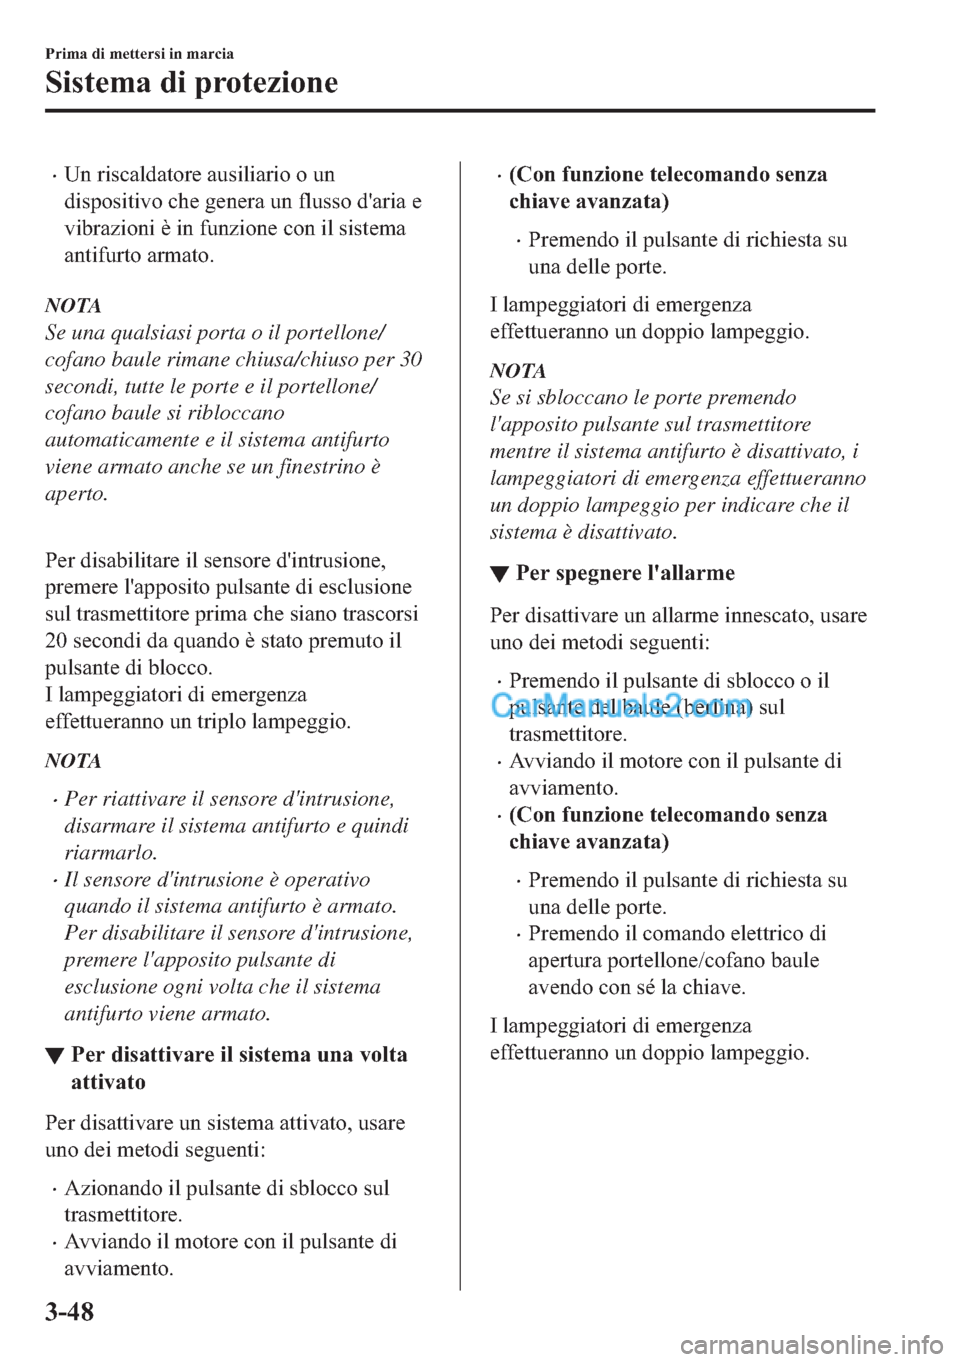 MAZDA MODEL 2 2019  Manuale del proprietario (in Italian) �x�8�Q��U�L�V�F�D�O�G�D�W�R�U�H��D�X�V�L�O�L�D�U�L�R��R��X�Q
�G�L�V�S�R�V�L�W�L�Y�R��F�K�H��J�H�Q�H�U�D��X�Q��I�O�X�V�V�R��G�
�D�U�L�D��H
�Y�L�E�U�D�]�L�R�Q�L��q��L�Q��I�X�Q�]�L�R�Q�H��F